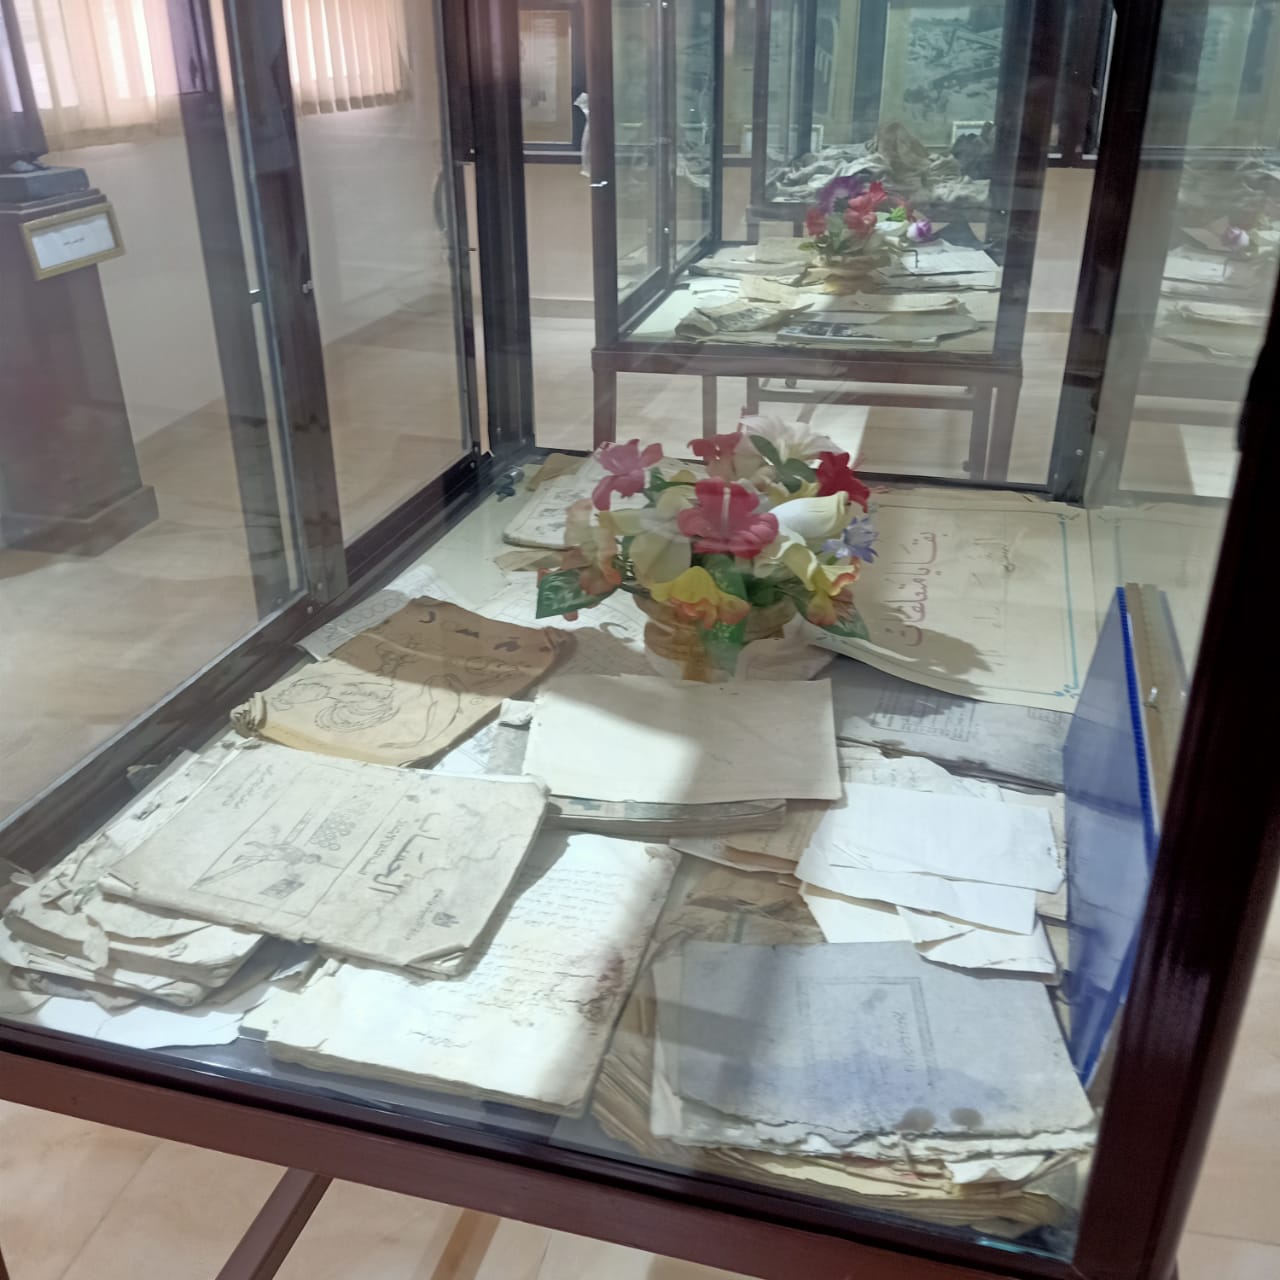  كتب وكراسات وملابس شهداء مذبحة بحر البقر بمتحف المدرسة (3)